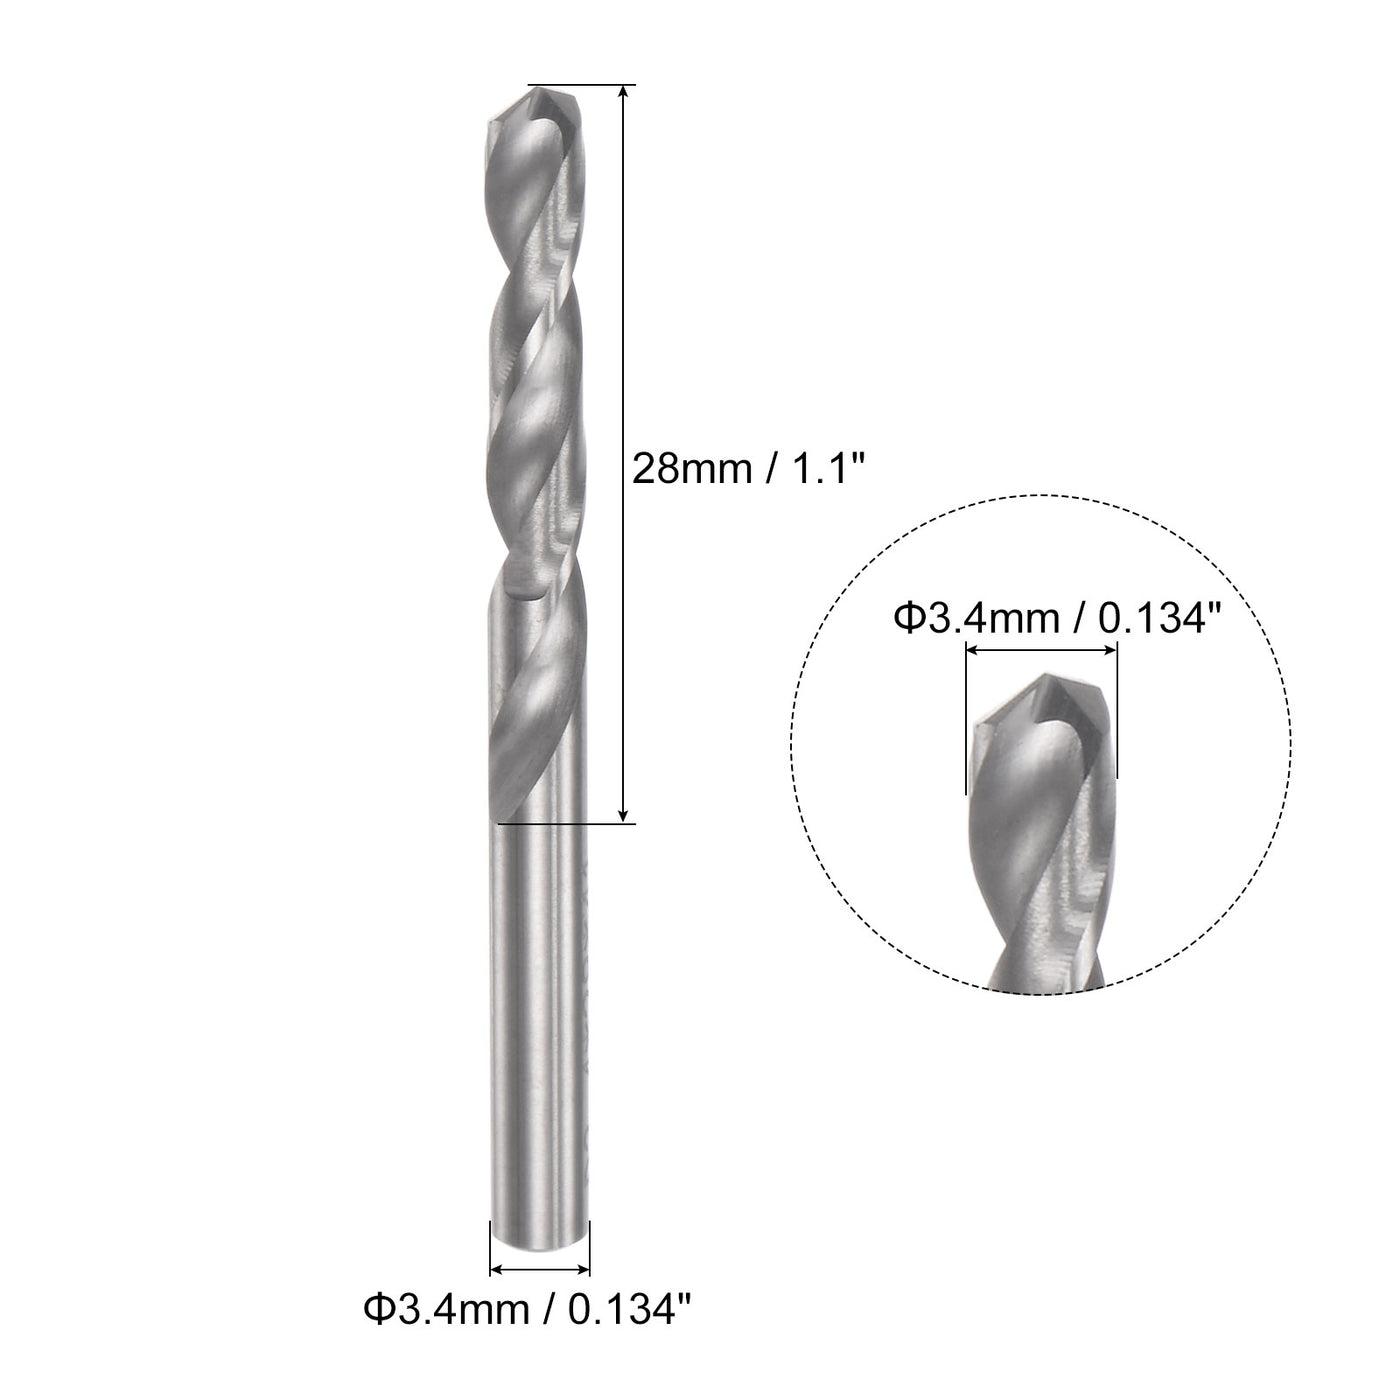 uxcell Uxcell 3.4mm C2/K20 Tungsten Carbide Straight Shank Spiral Flutes Twist Drill Bit